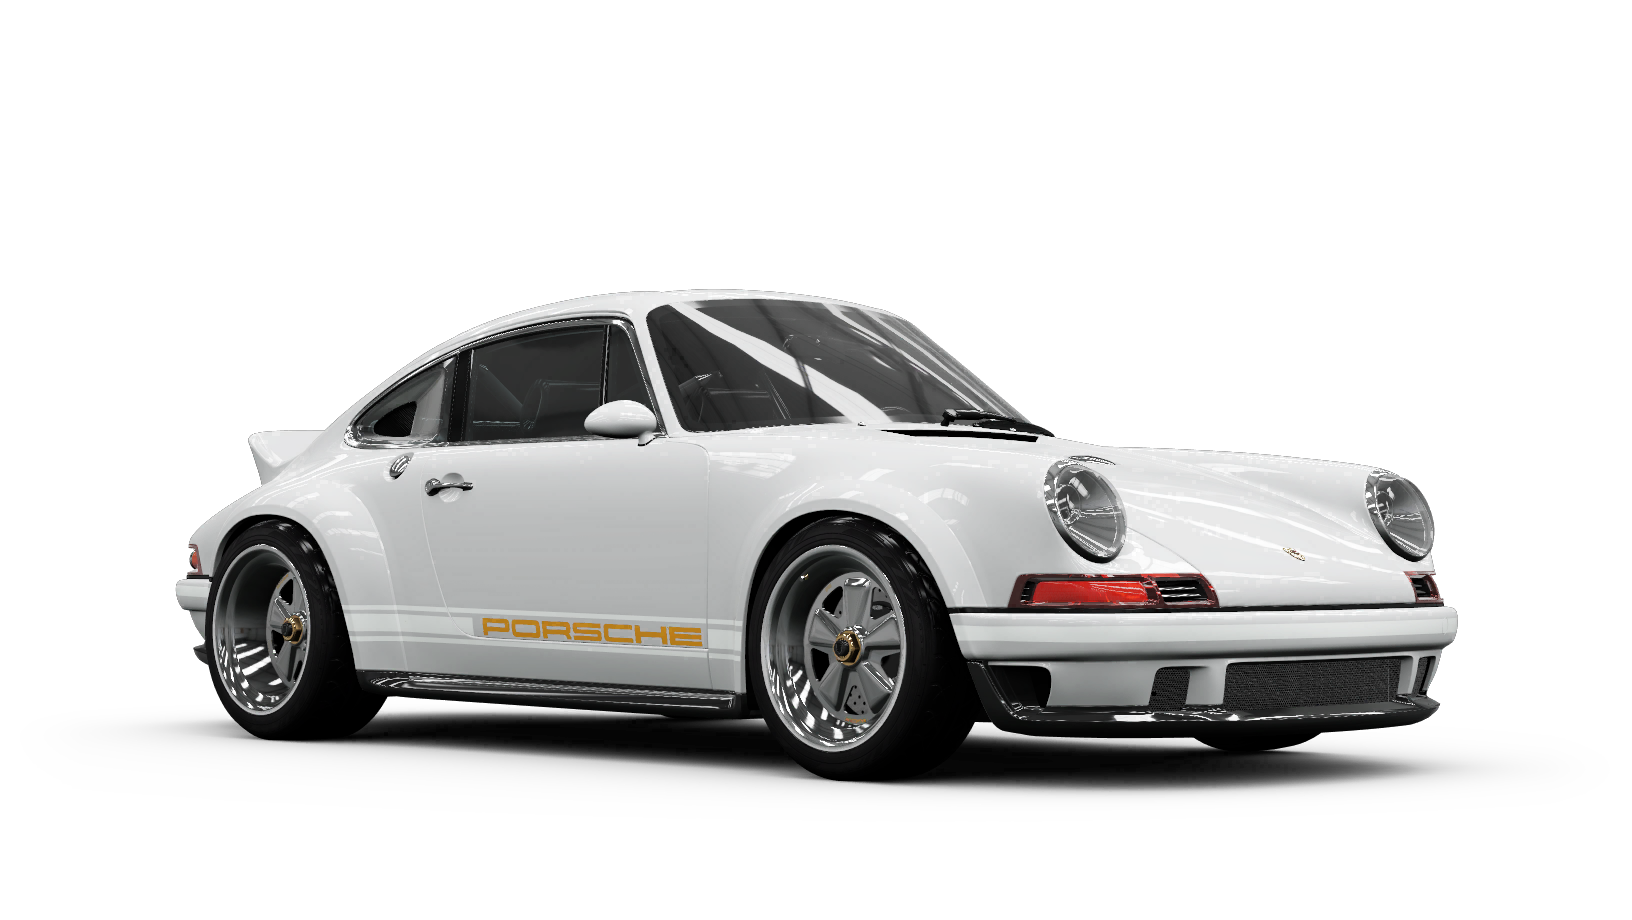 Porsche 911 reimagined by Singer - DLS | Forza Wiki | Fandom